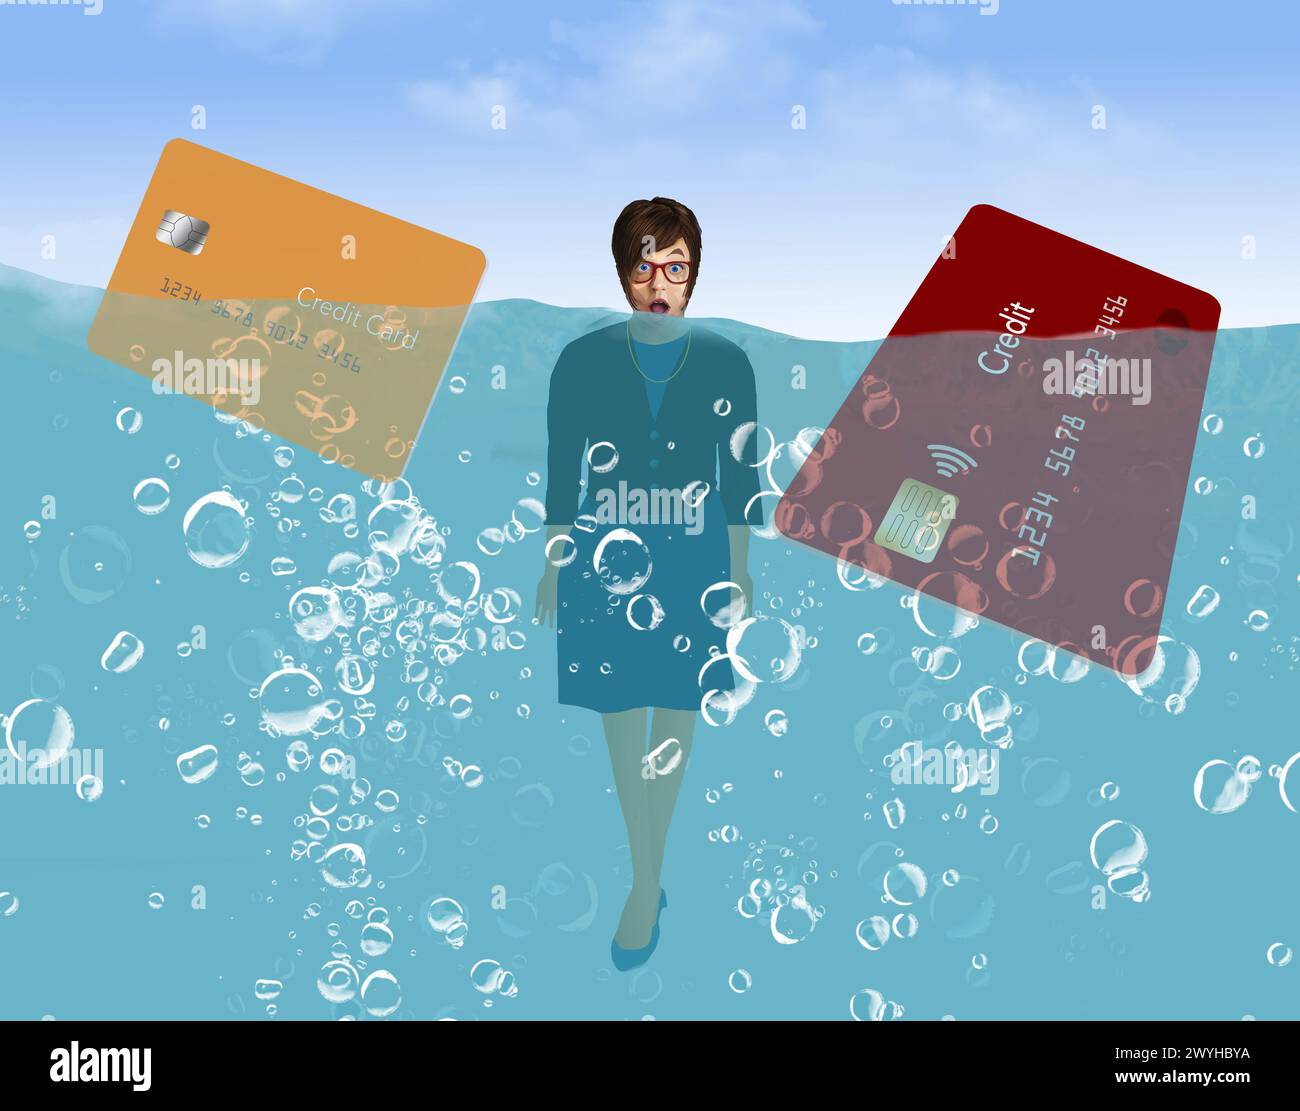 Diese junge Dame ertrinkt in Kreditkartenschulden und wird in dieser 3D-Illustration bis zum Hals im Wasser gesehen. Stockfoto